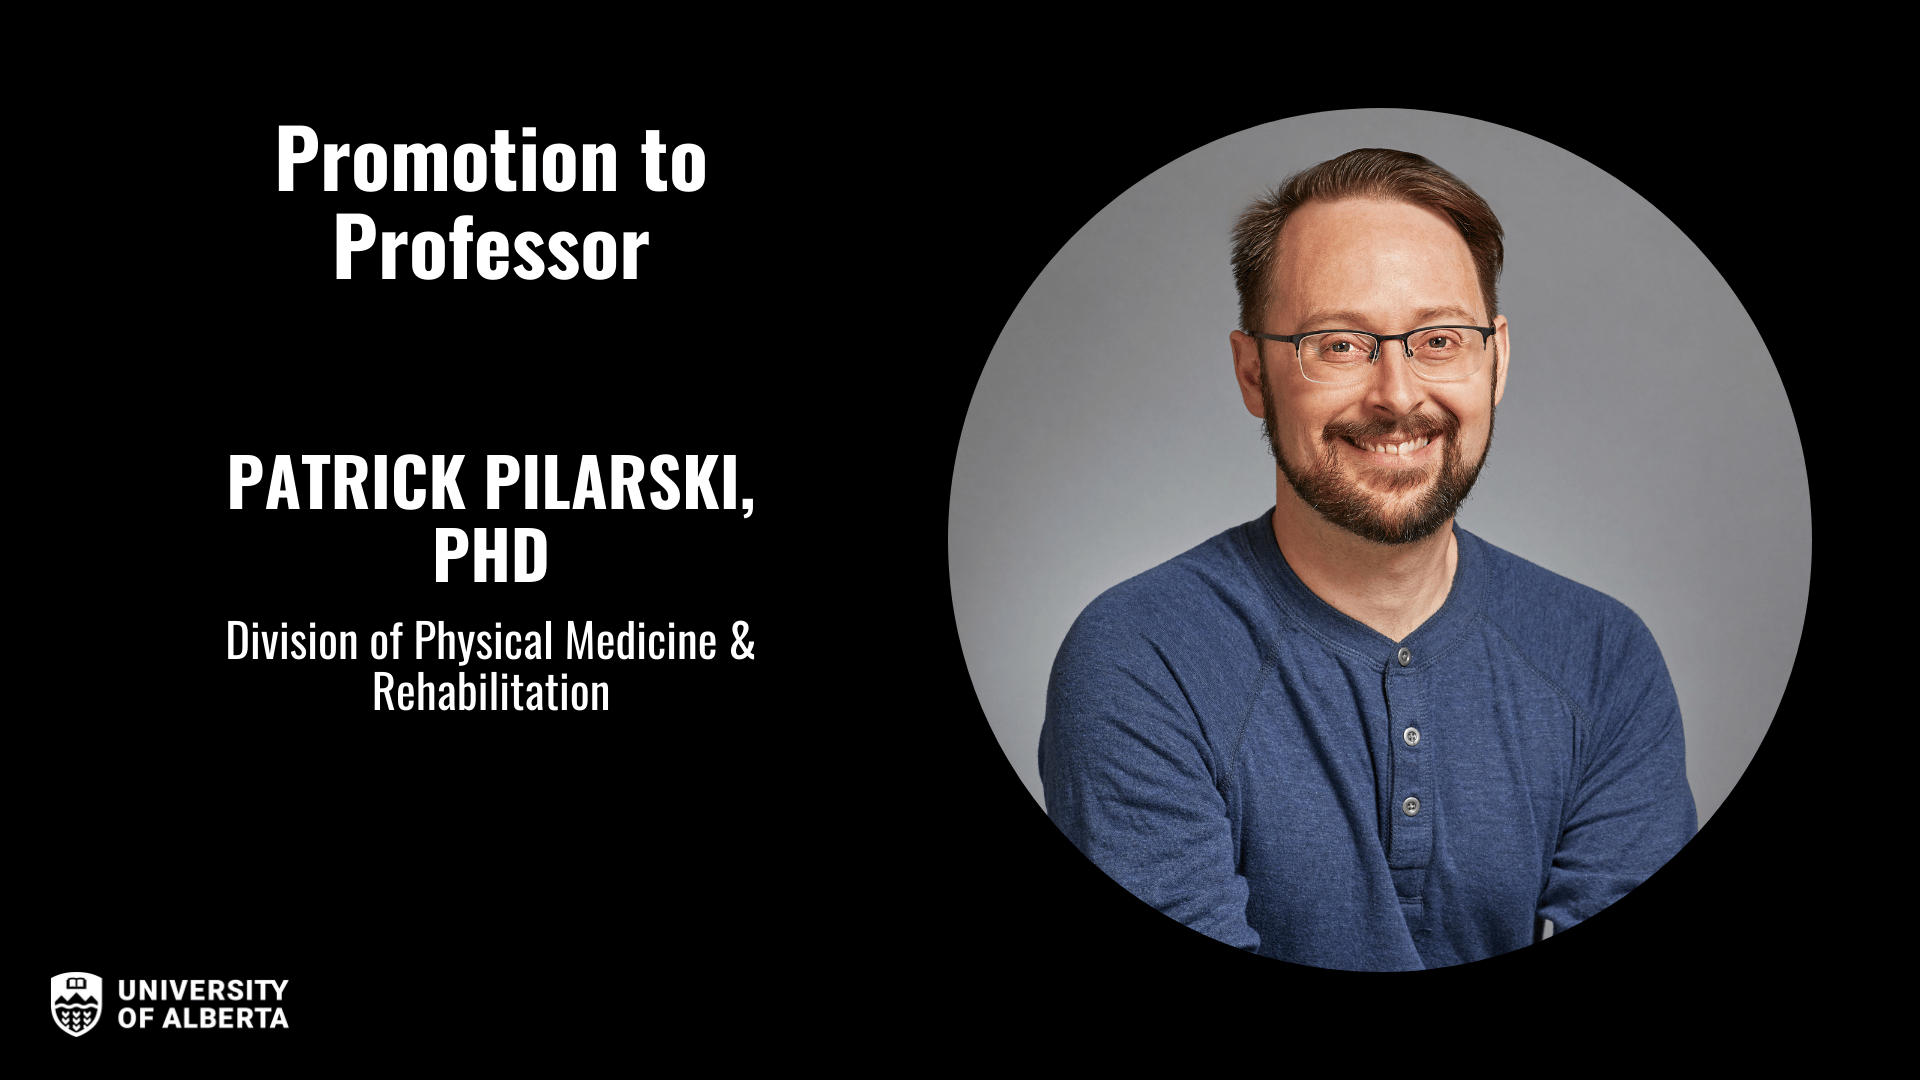 Dr. Patrick Pilarski